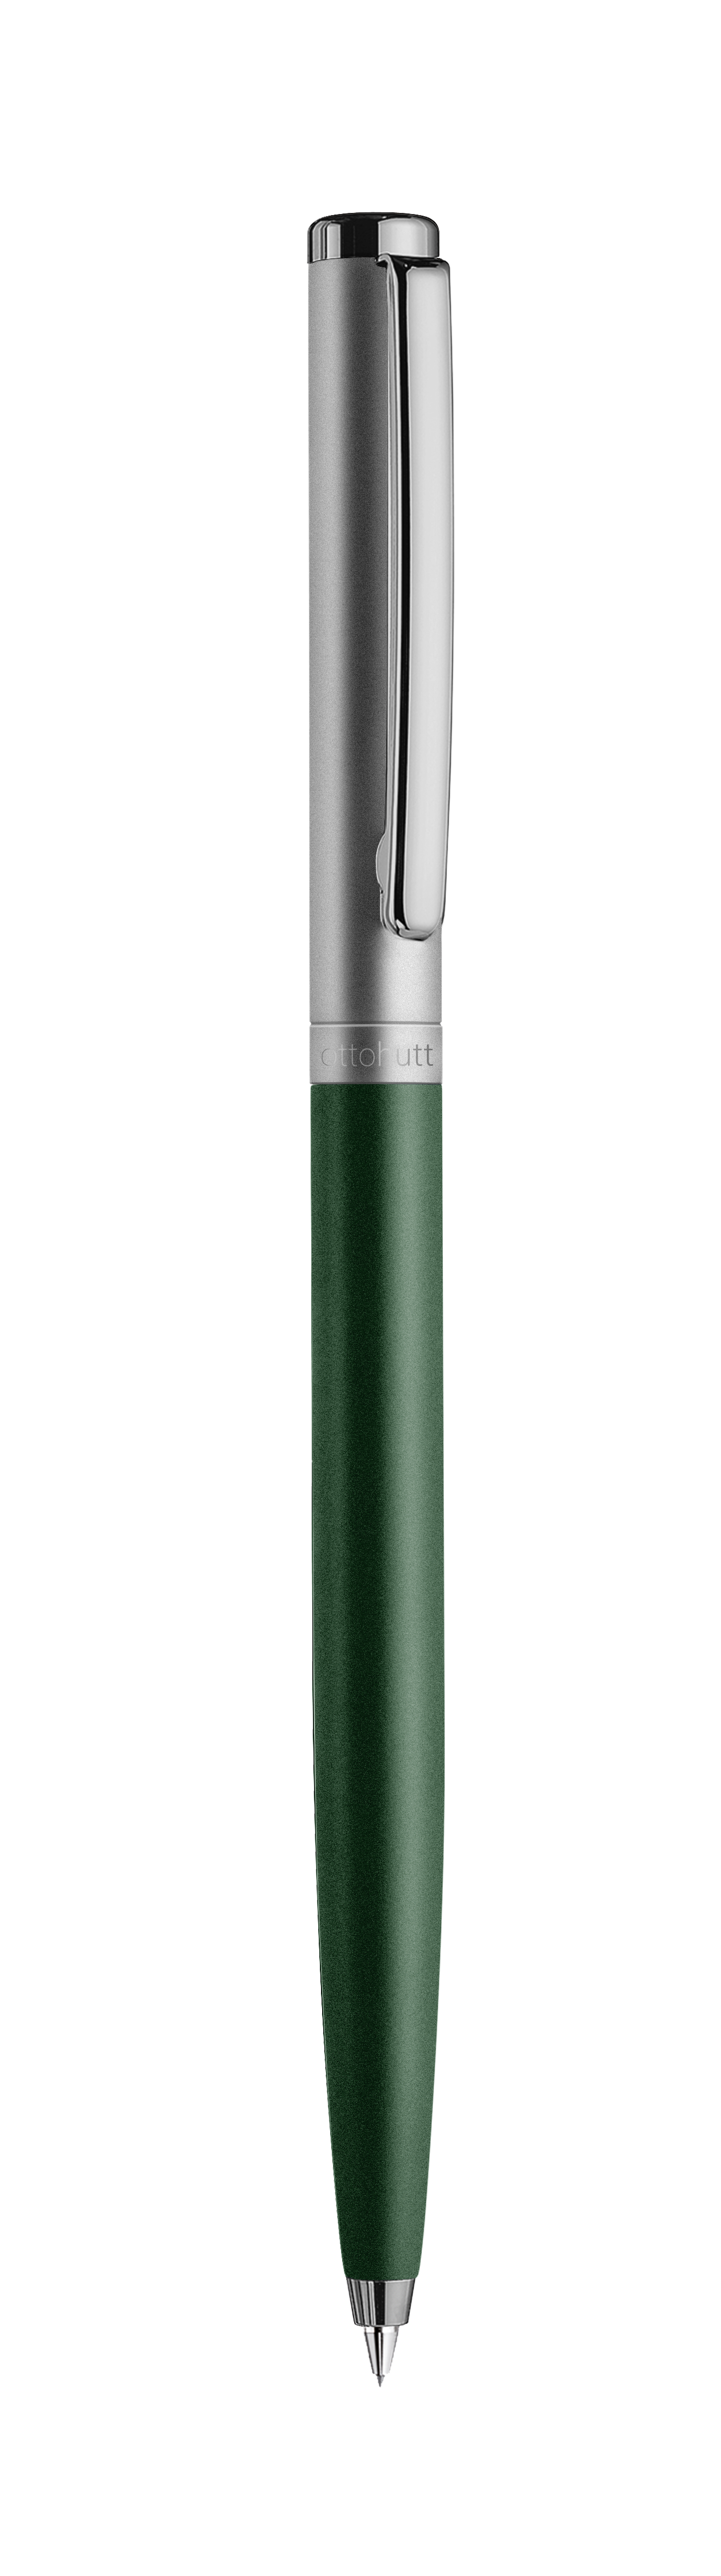 Kugelschreiber grün matt/Ruthenium matt - Design 01